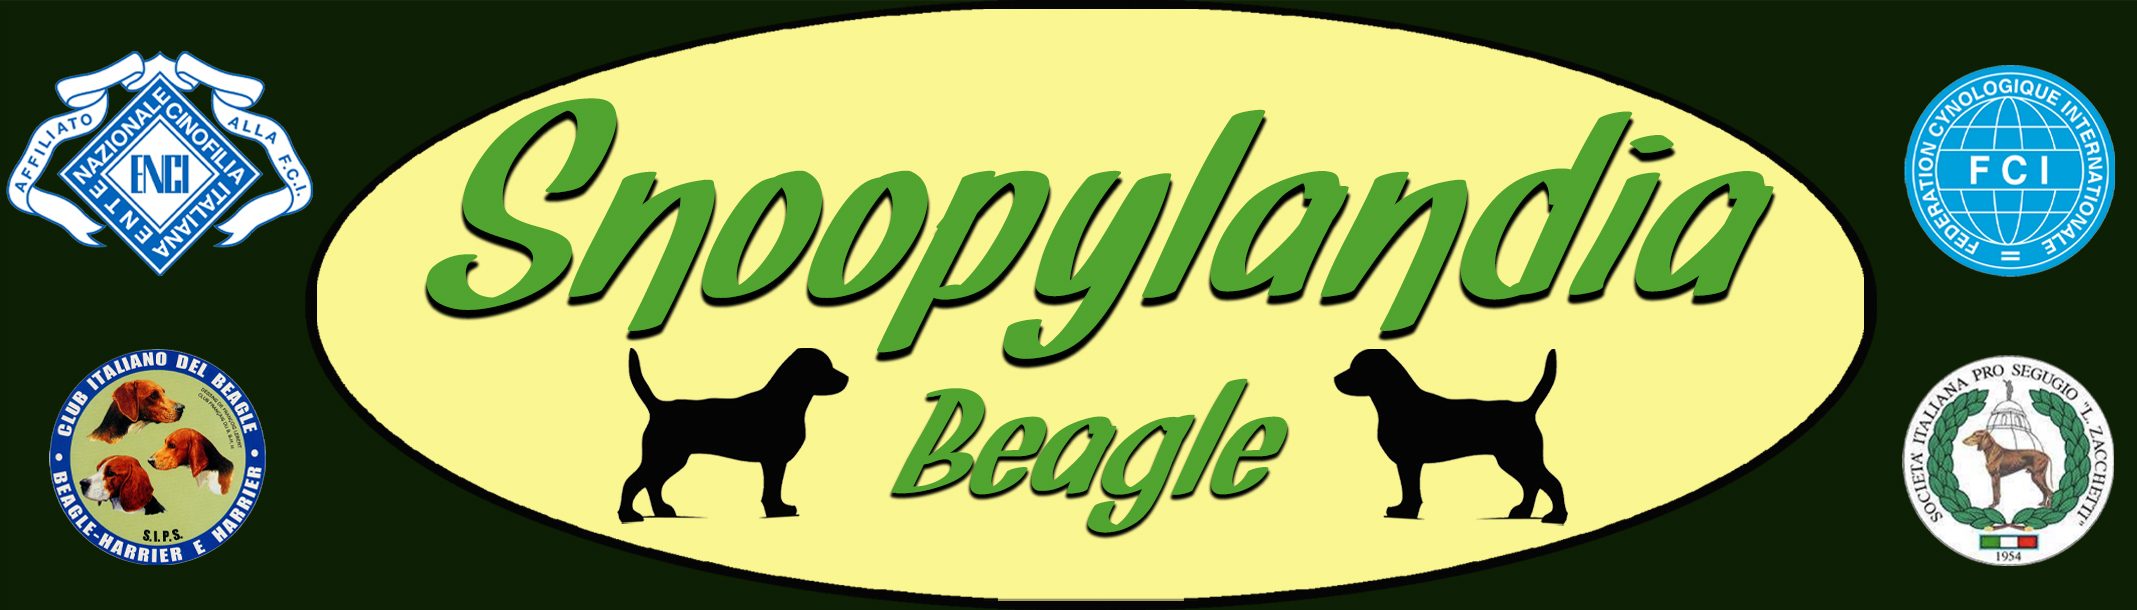 Snoopylandia - Allevamento amatoriale di cani Beagle riconosciuto ENCI e FCI - Logo